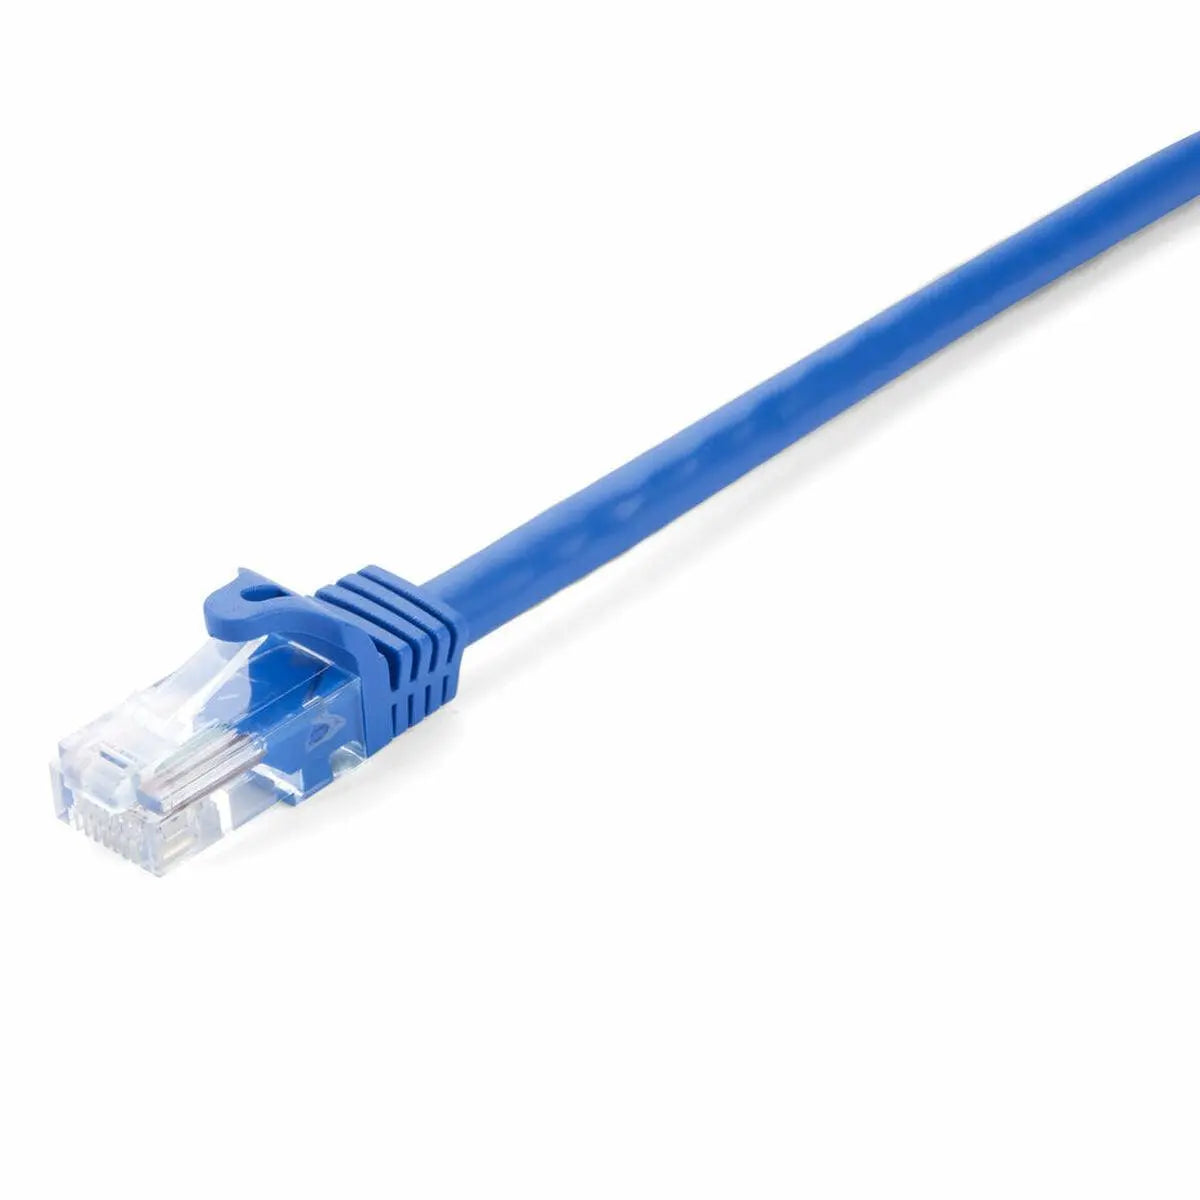 UTP Category 6 Rigid Network Cable V7 V7CAT6UTP-02M-BLU-1N - IGSI Europe Ltd